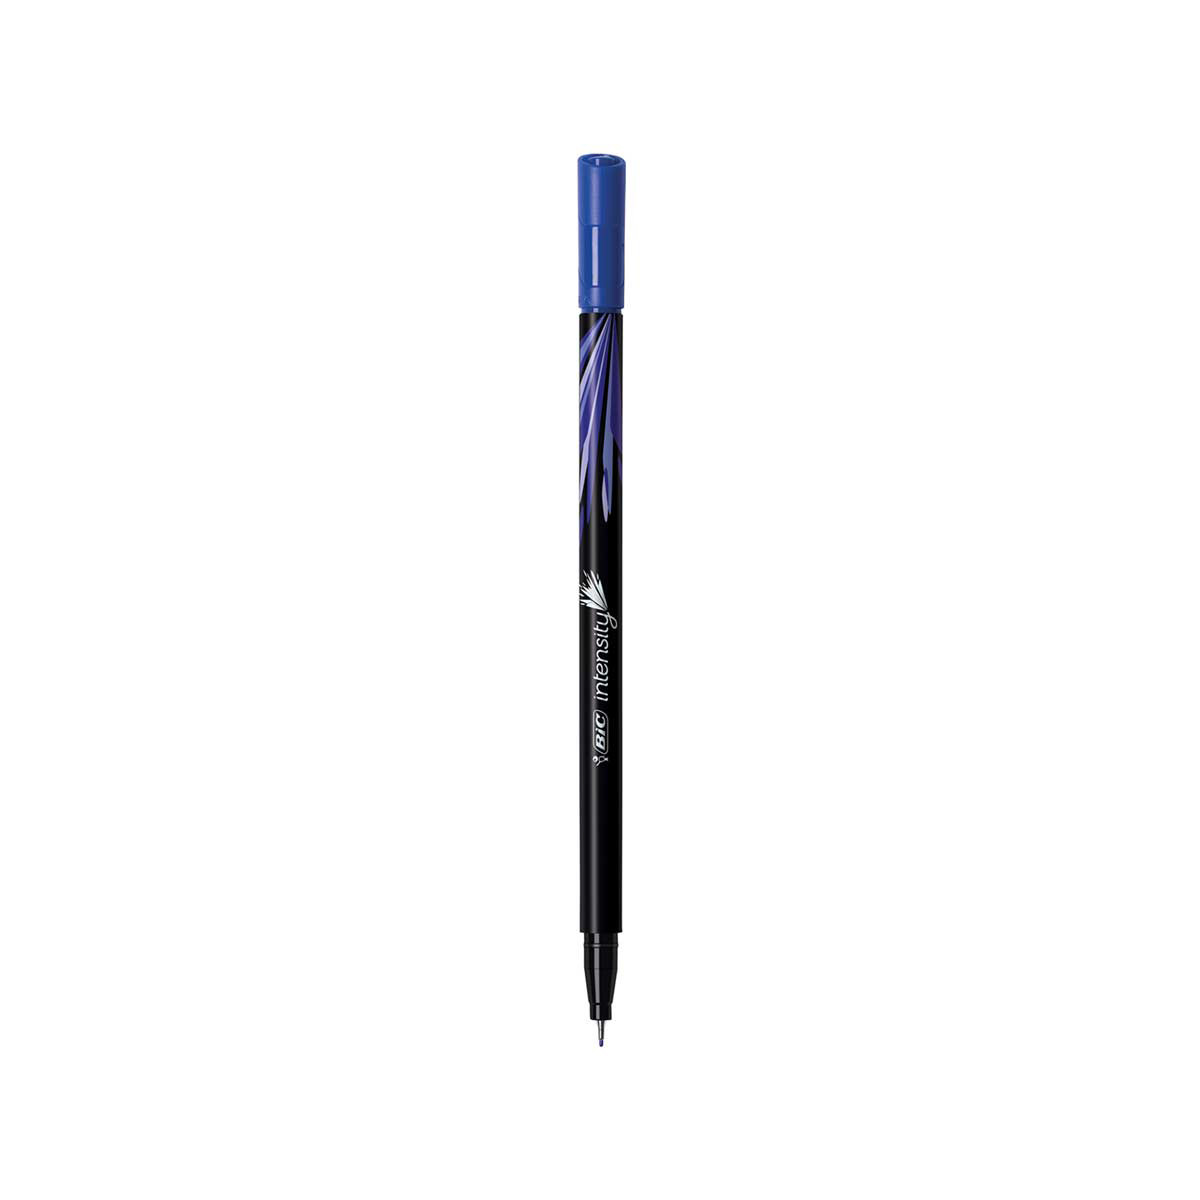 BIC Intensity Fineliner Marker Pen